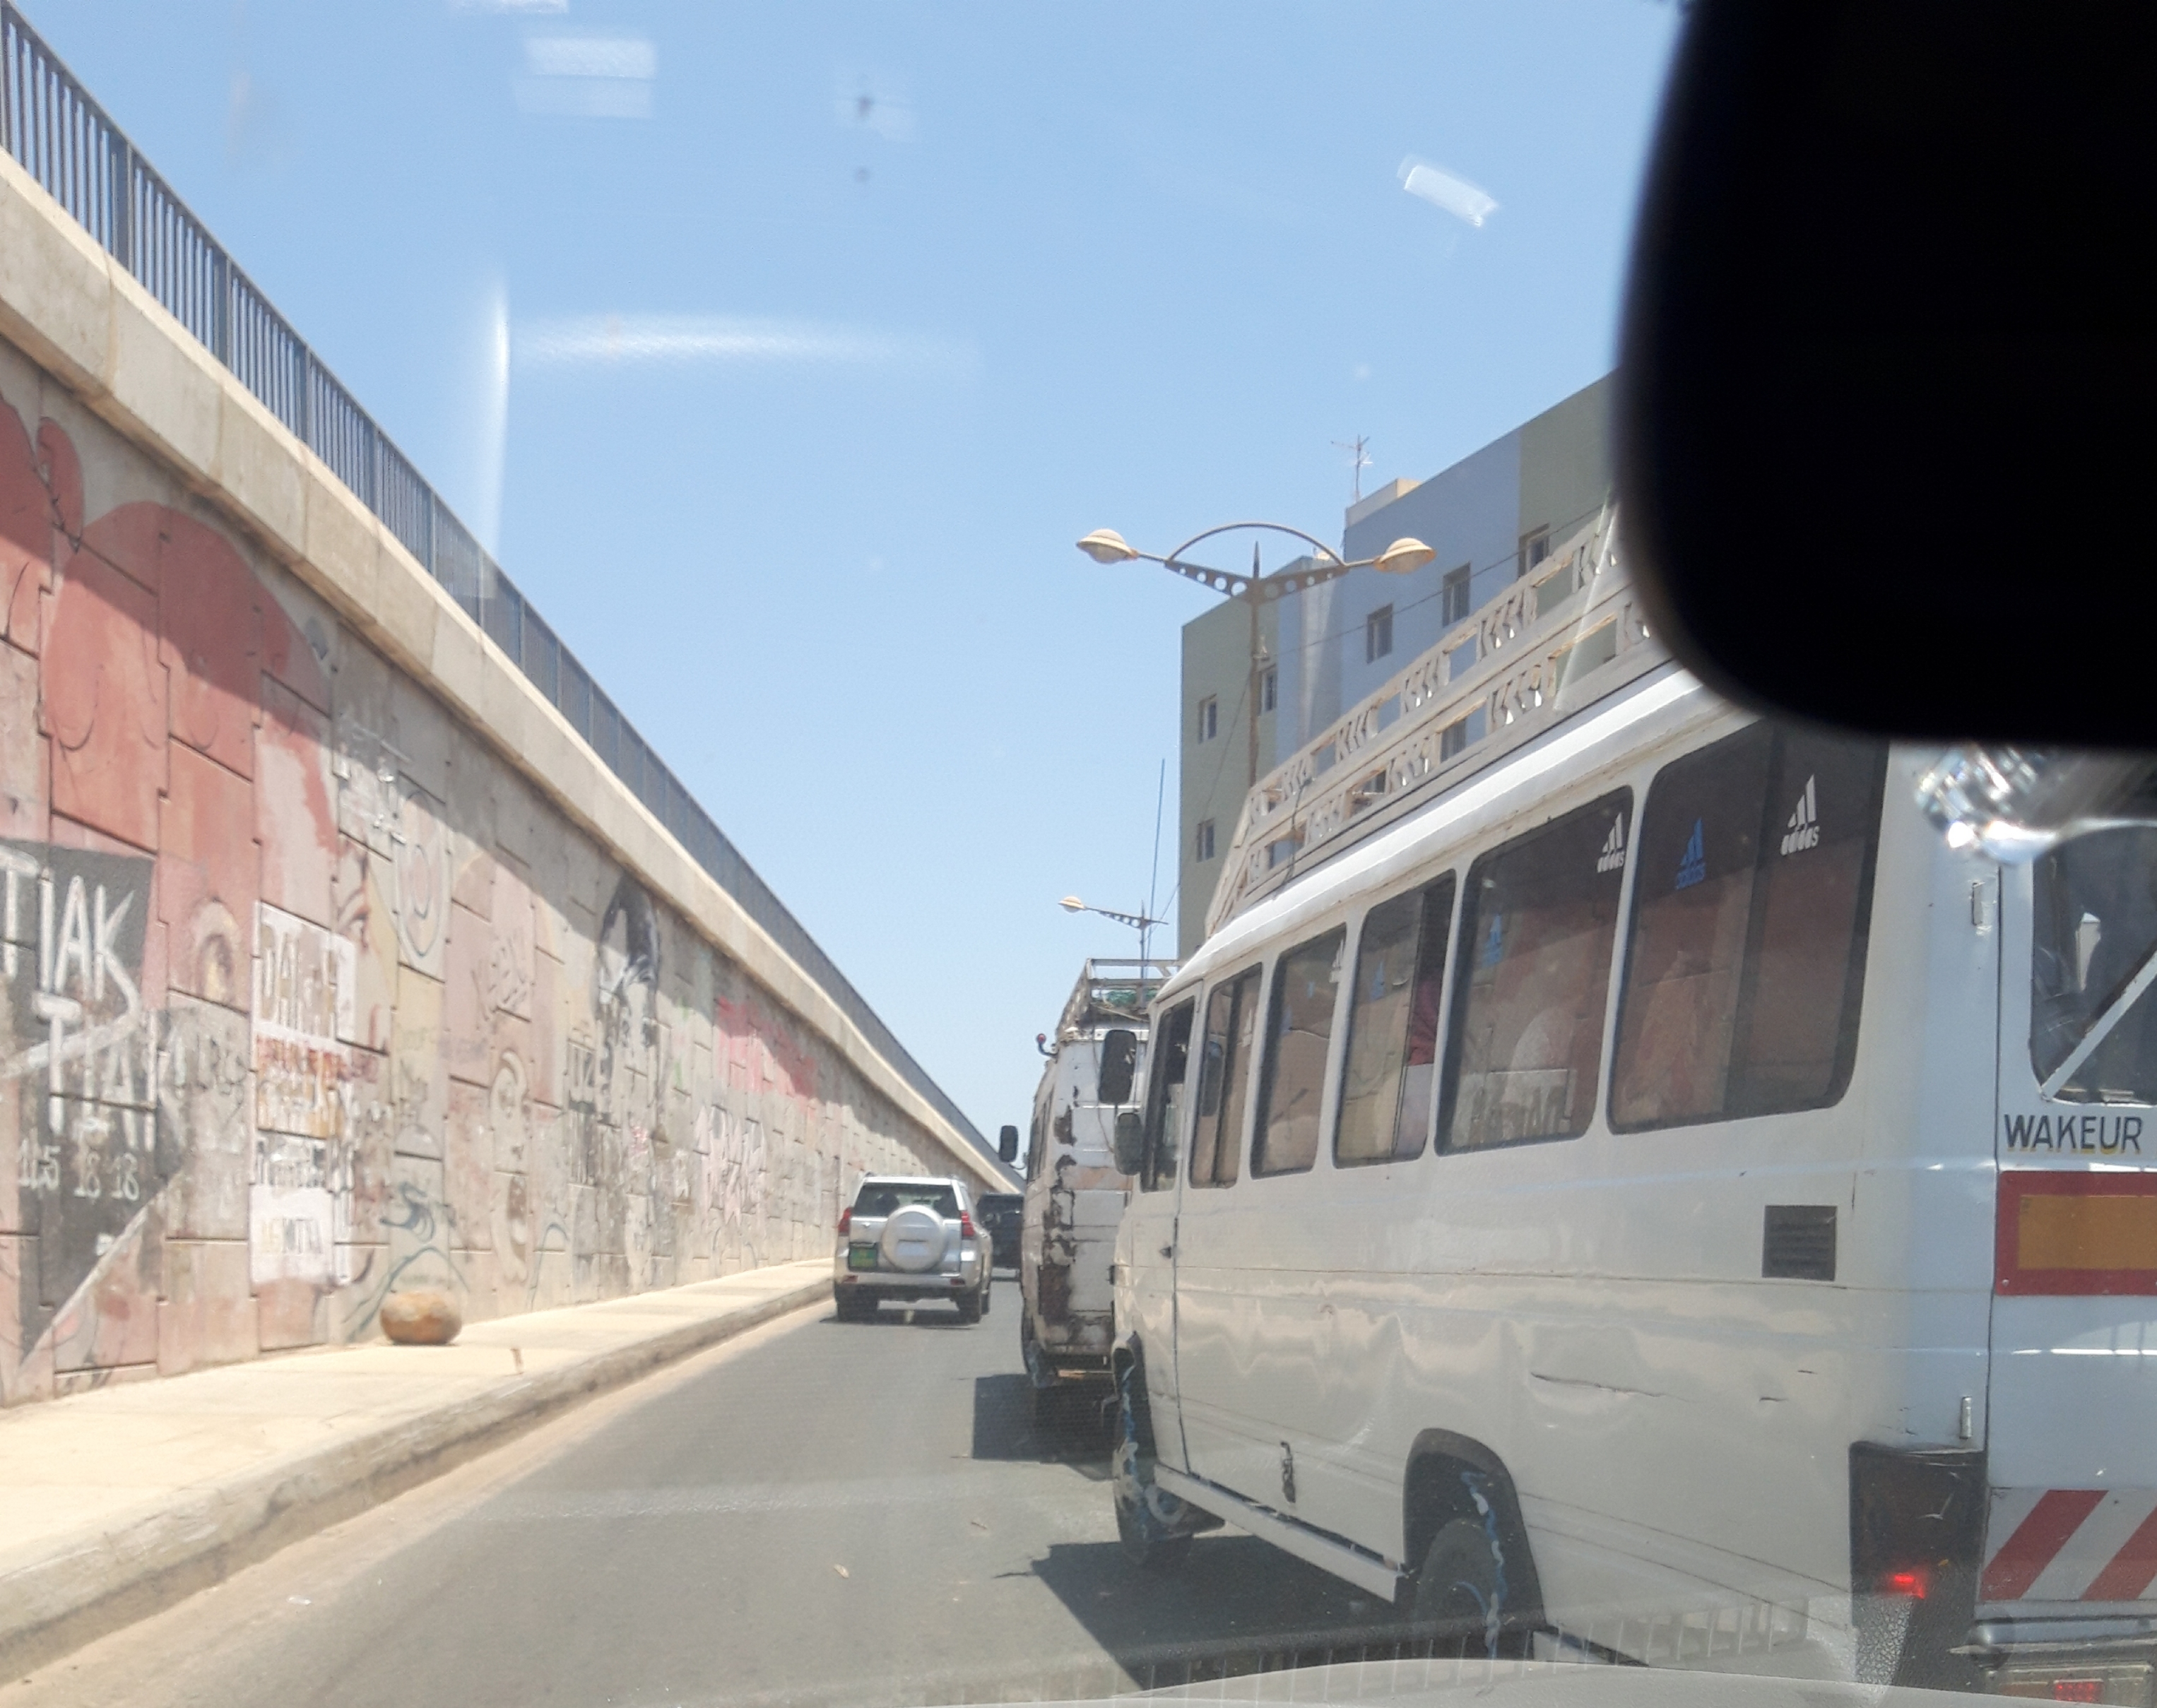 Transport : Le dilemme des automilistes face aux ‘’Cars rapides’’ et ‘’Ndiaga Ndiaye’’ en stationnement irrégulier sur la voie.